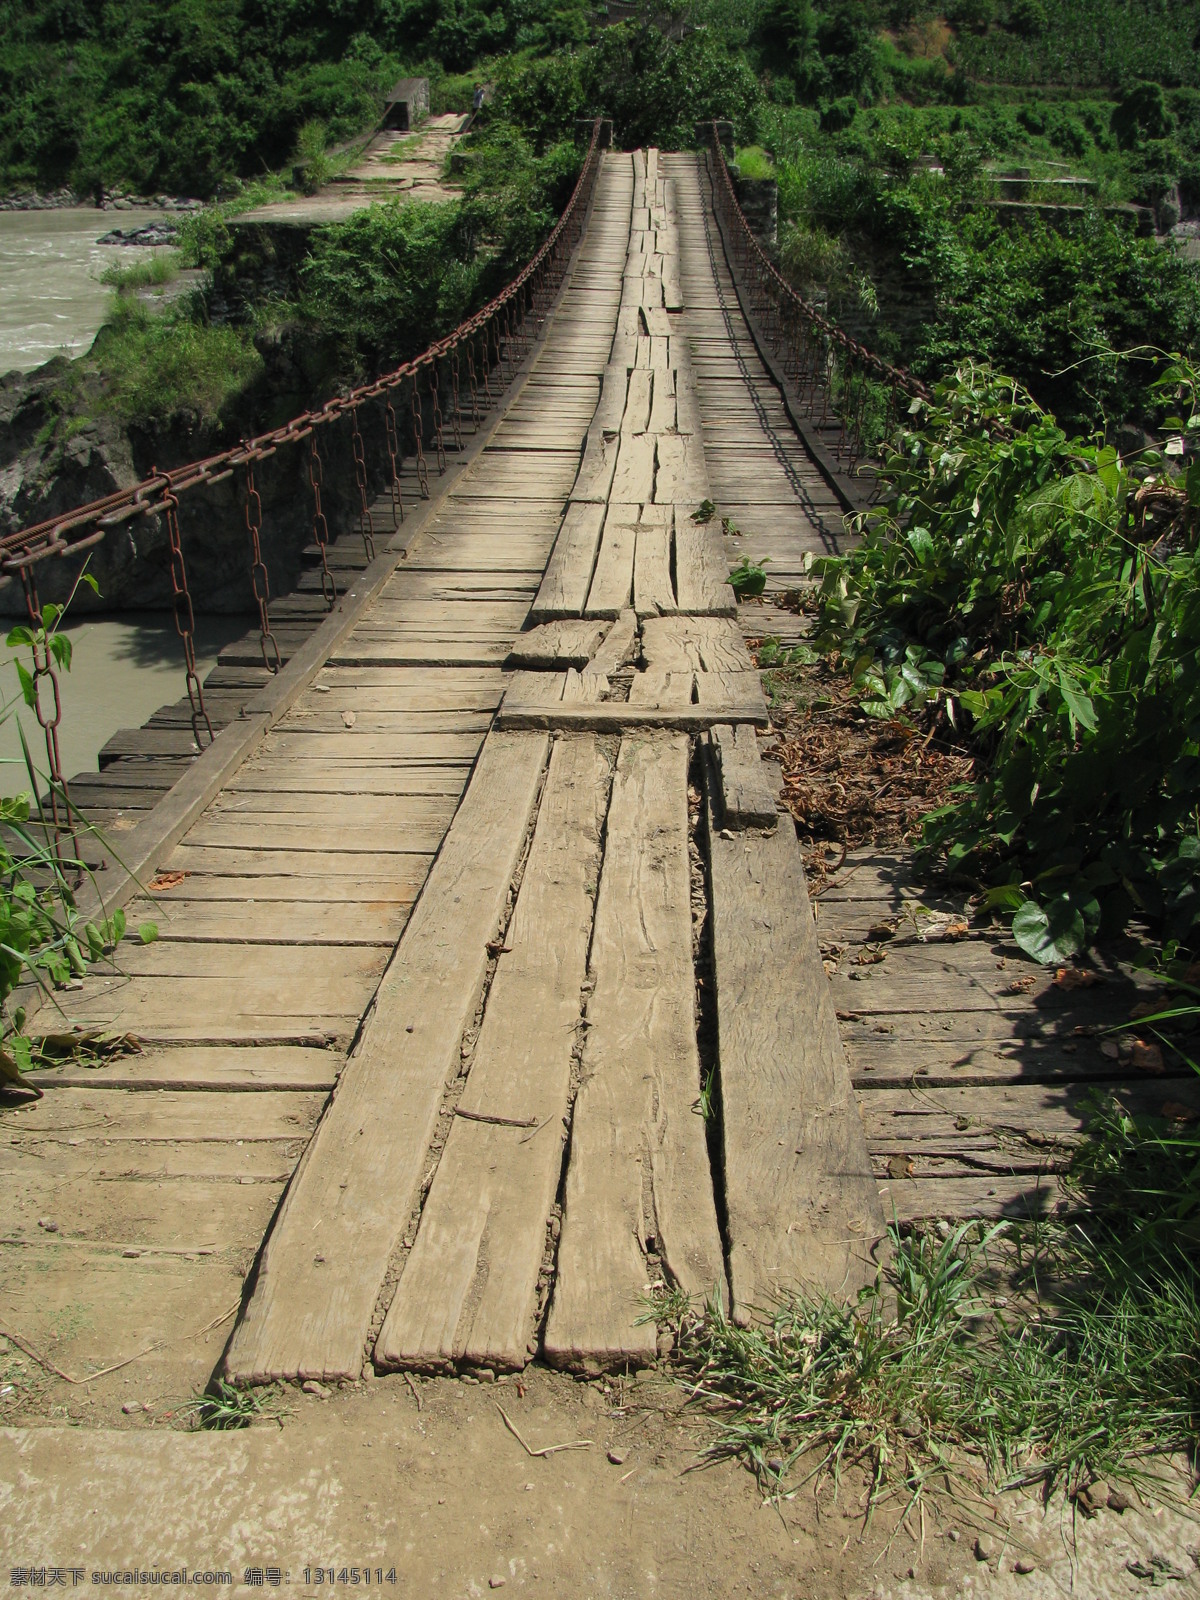 铁索桥 桥 吊桥 古桥 老桥 吊索桥 木板 铁索 人文景观 旅游摄影